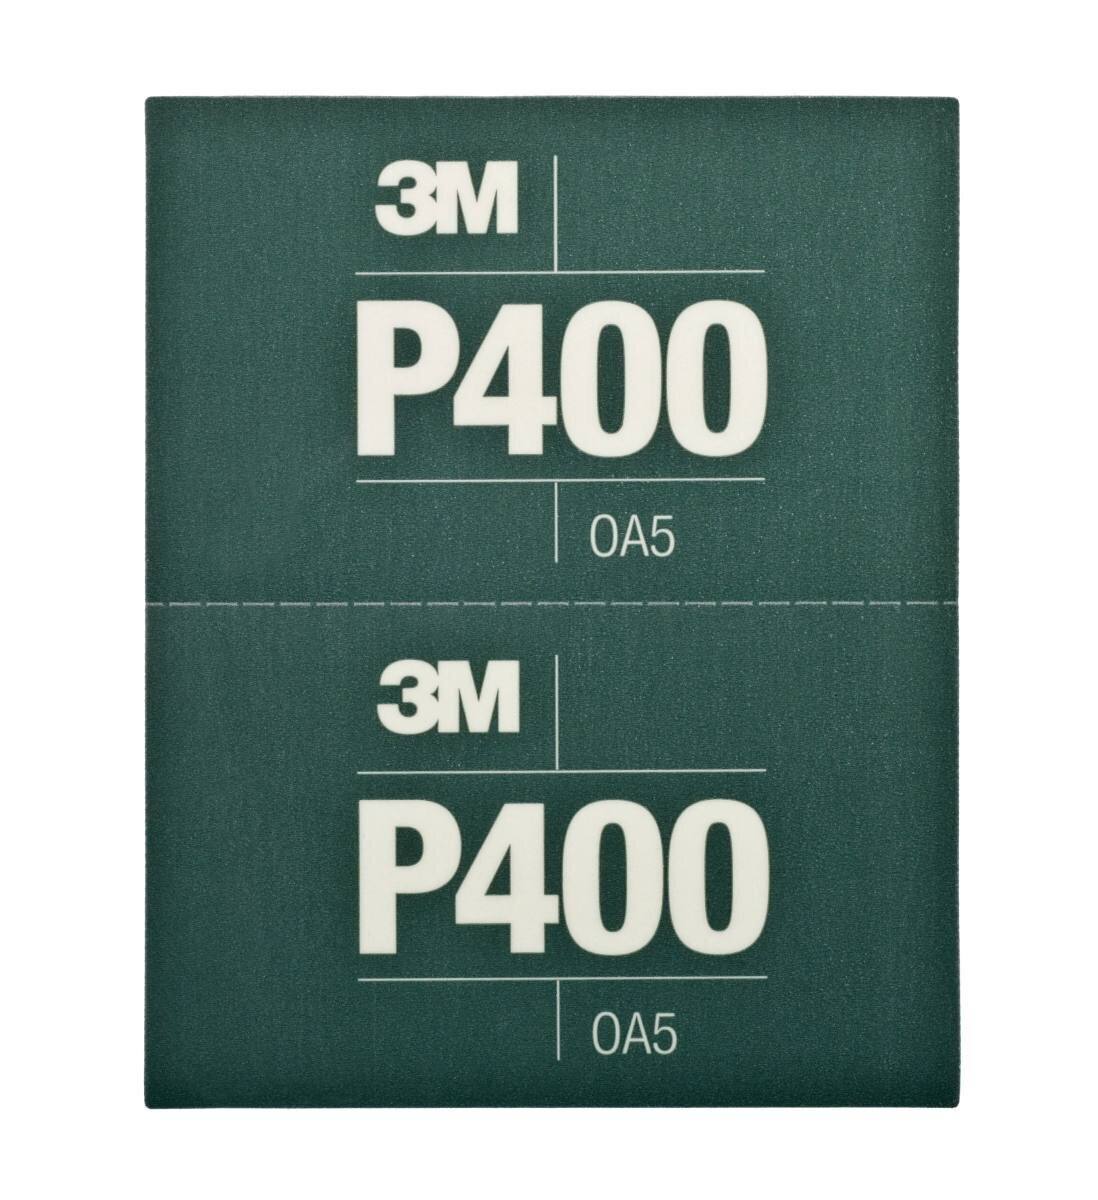  3M Hookit Joustavat hiomanauhat, vihreä, 140 mm x 171 mm, P400, 25 kpl / laatikko